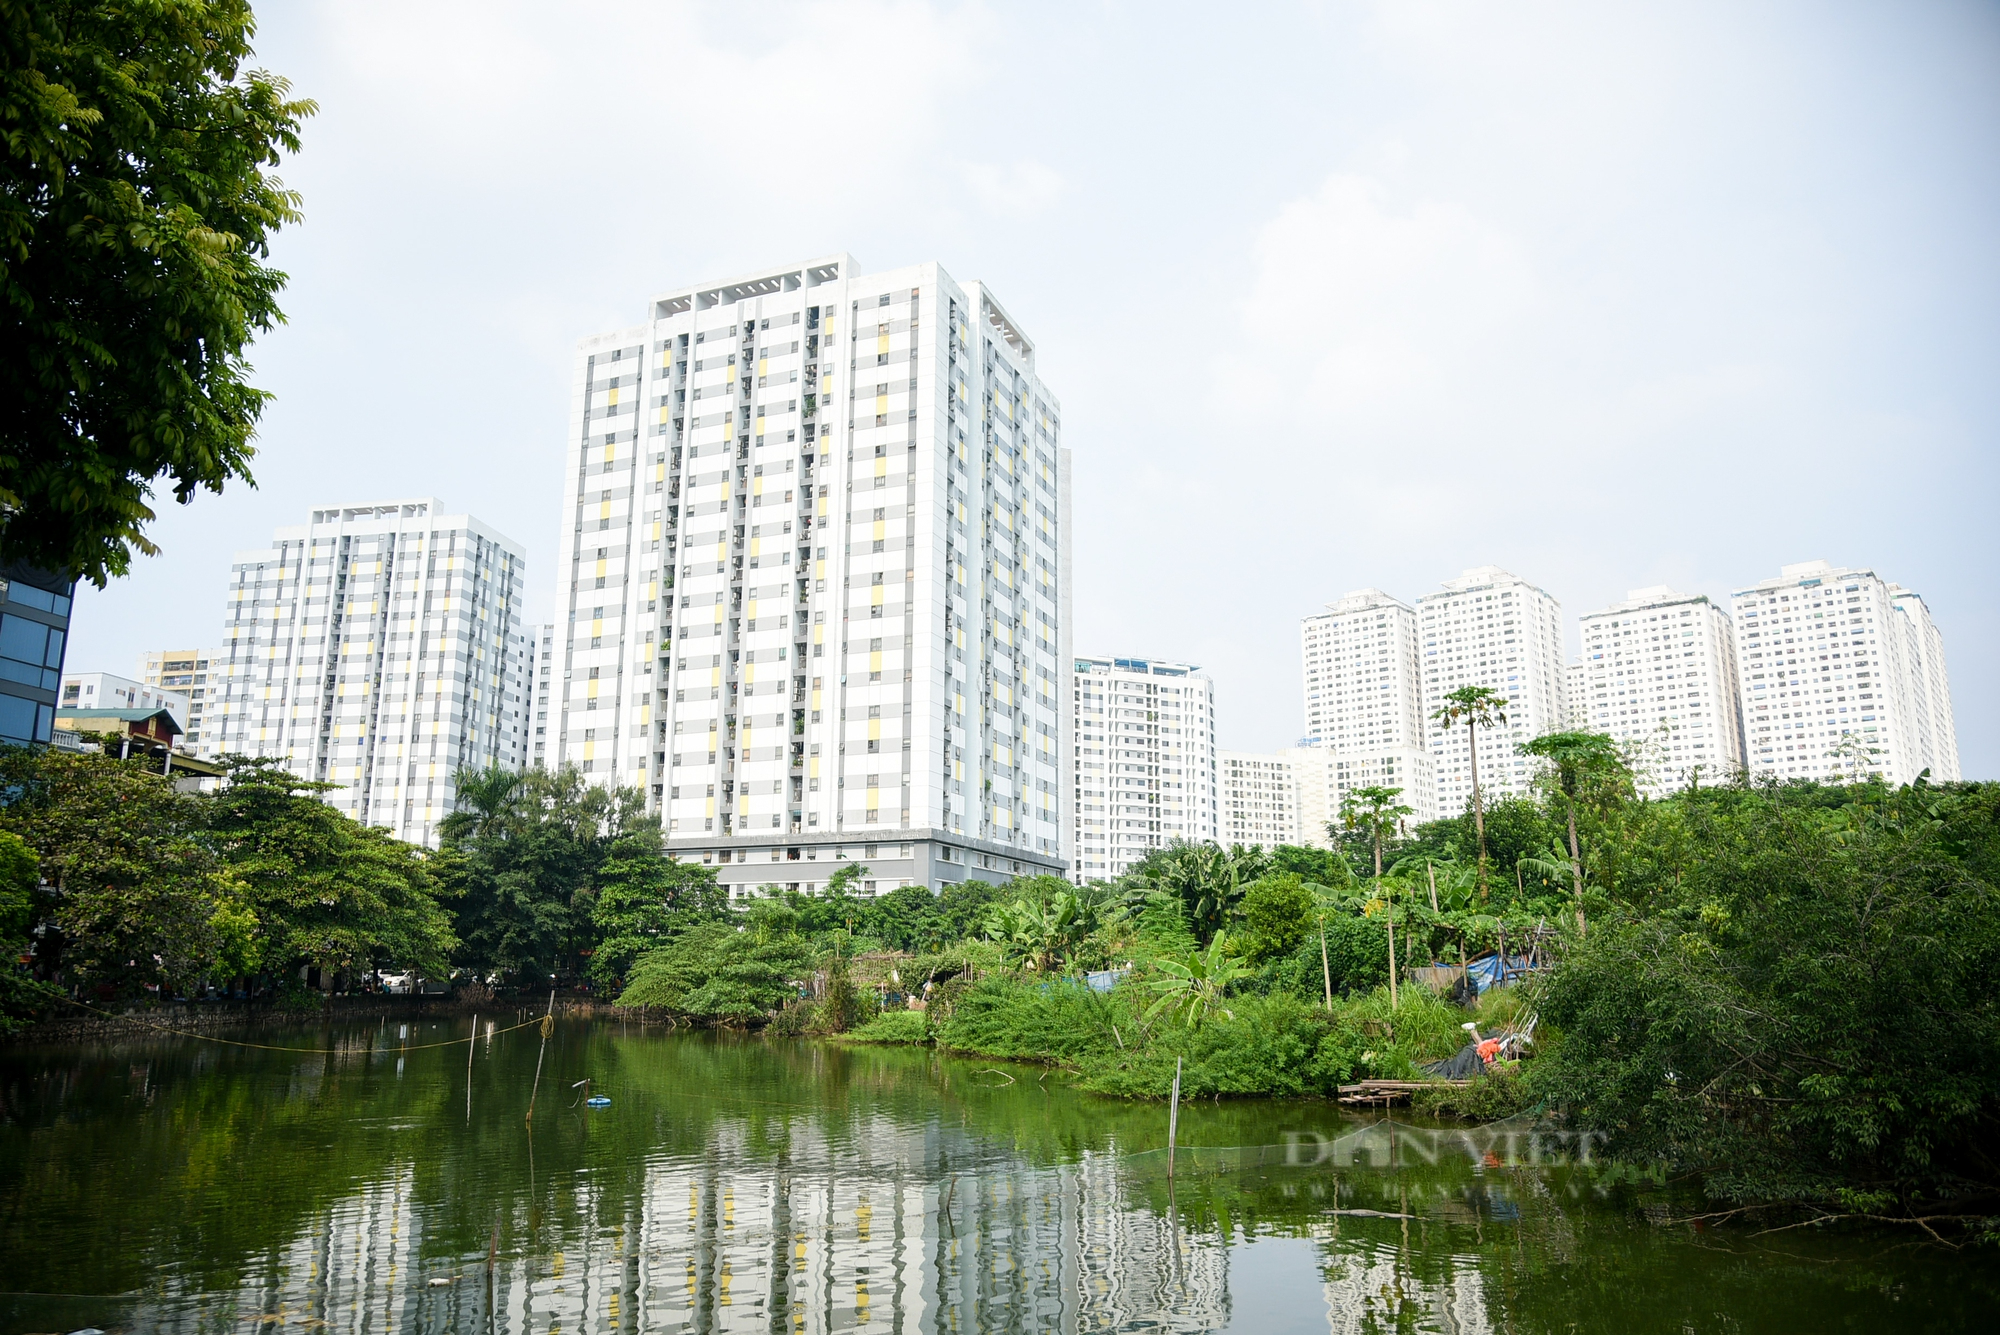 Cận cảnh các khu đất trường học, cây xanh ở Hà Nội bị quy hoạch vào nghĩa trang ở Thủ đô  - Ảnh 5.